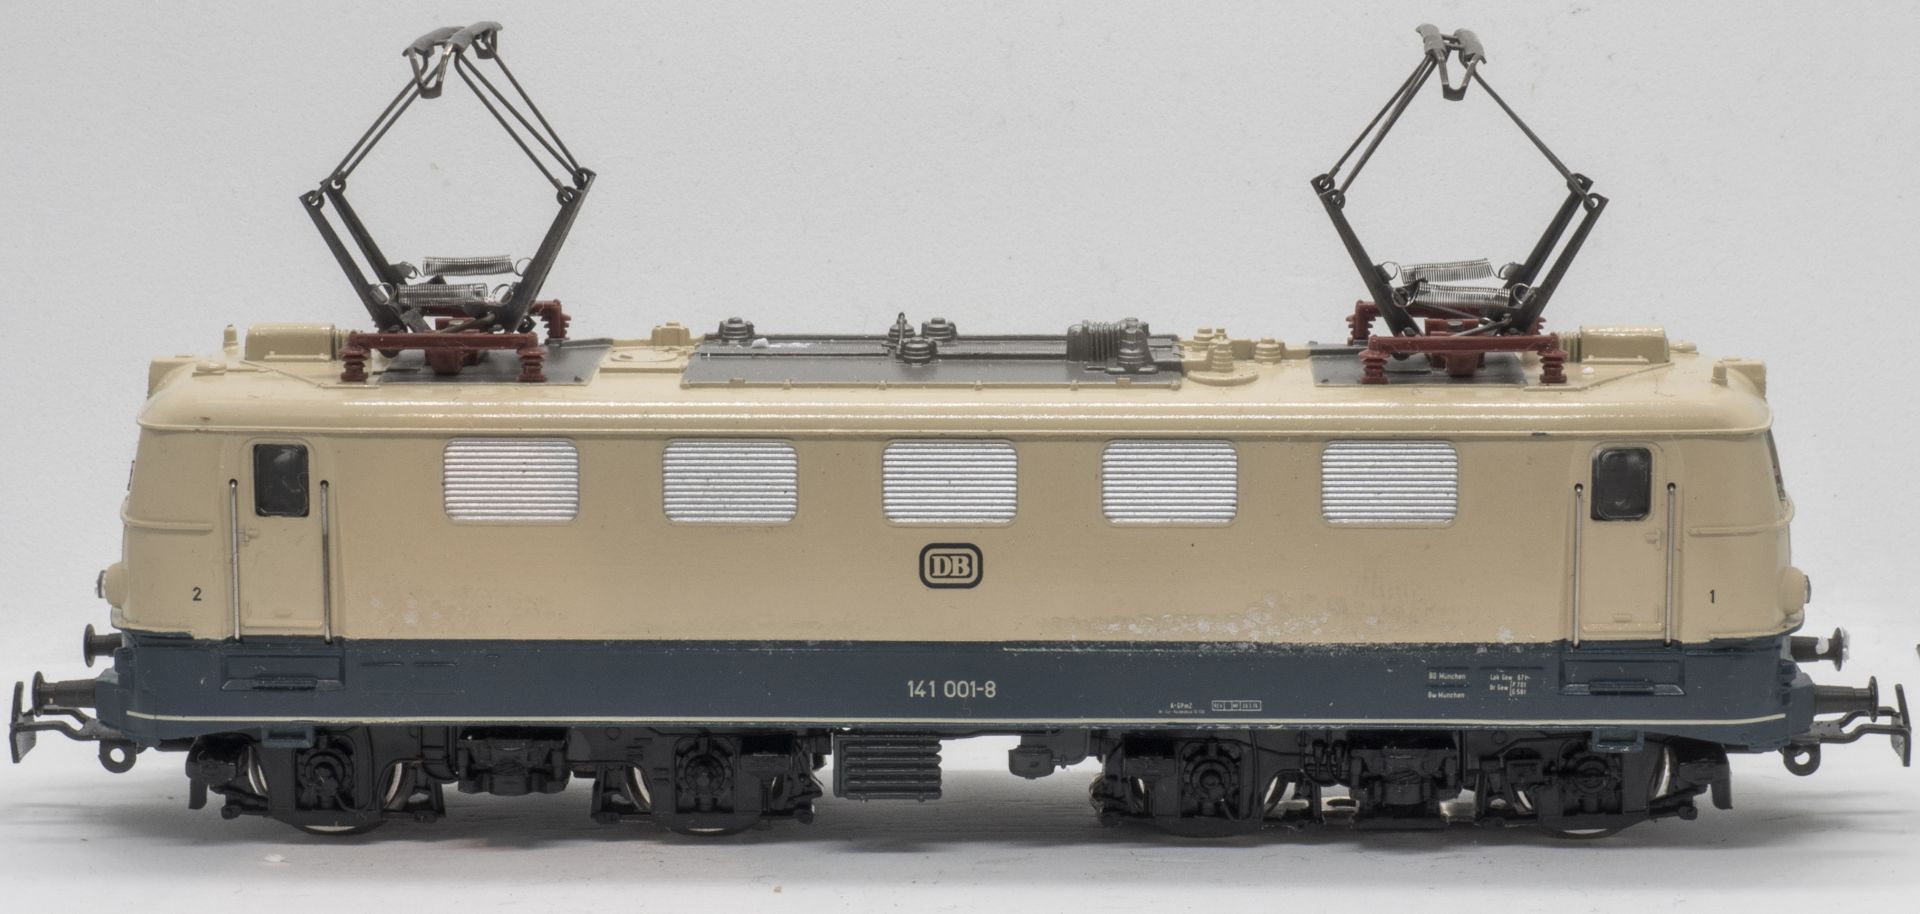 Primex E - Lokomotive BR 141, BN 141 101-8, Spur H0, sehr guter Zustand - nur zur Probe gelaufen. In